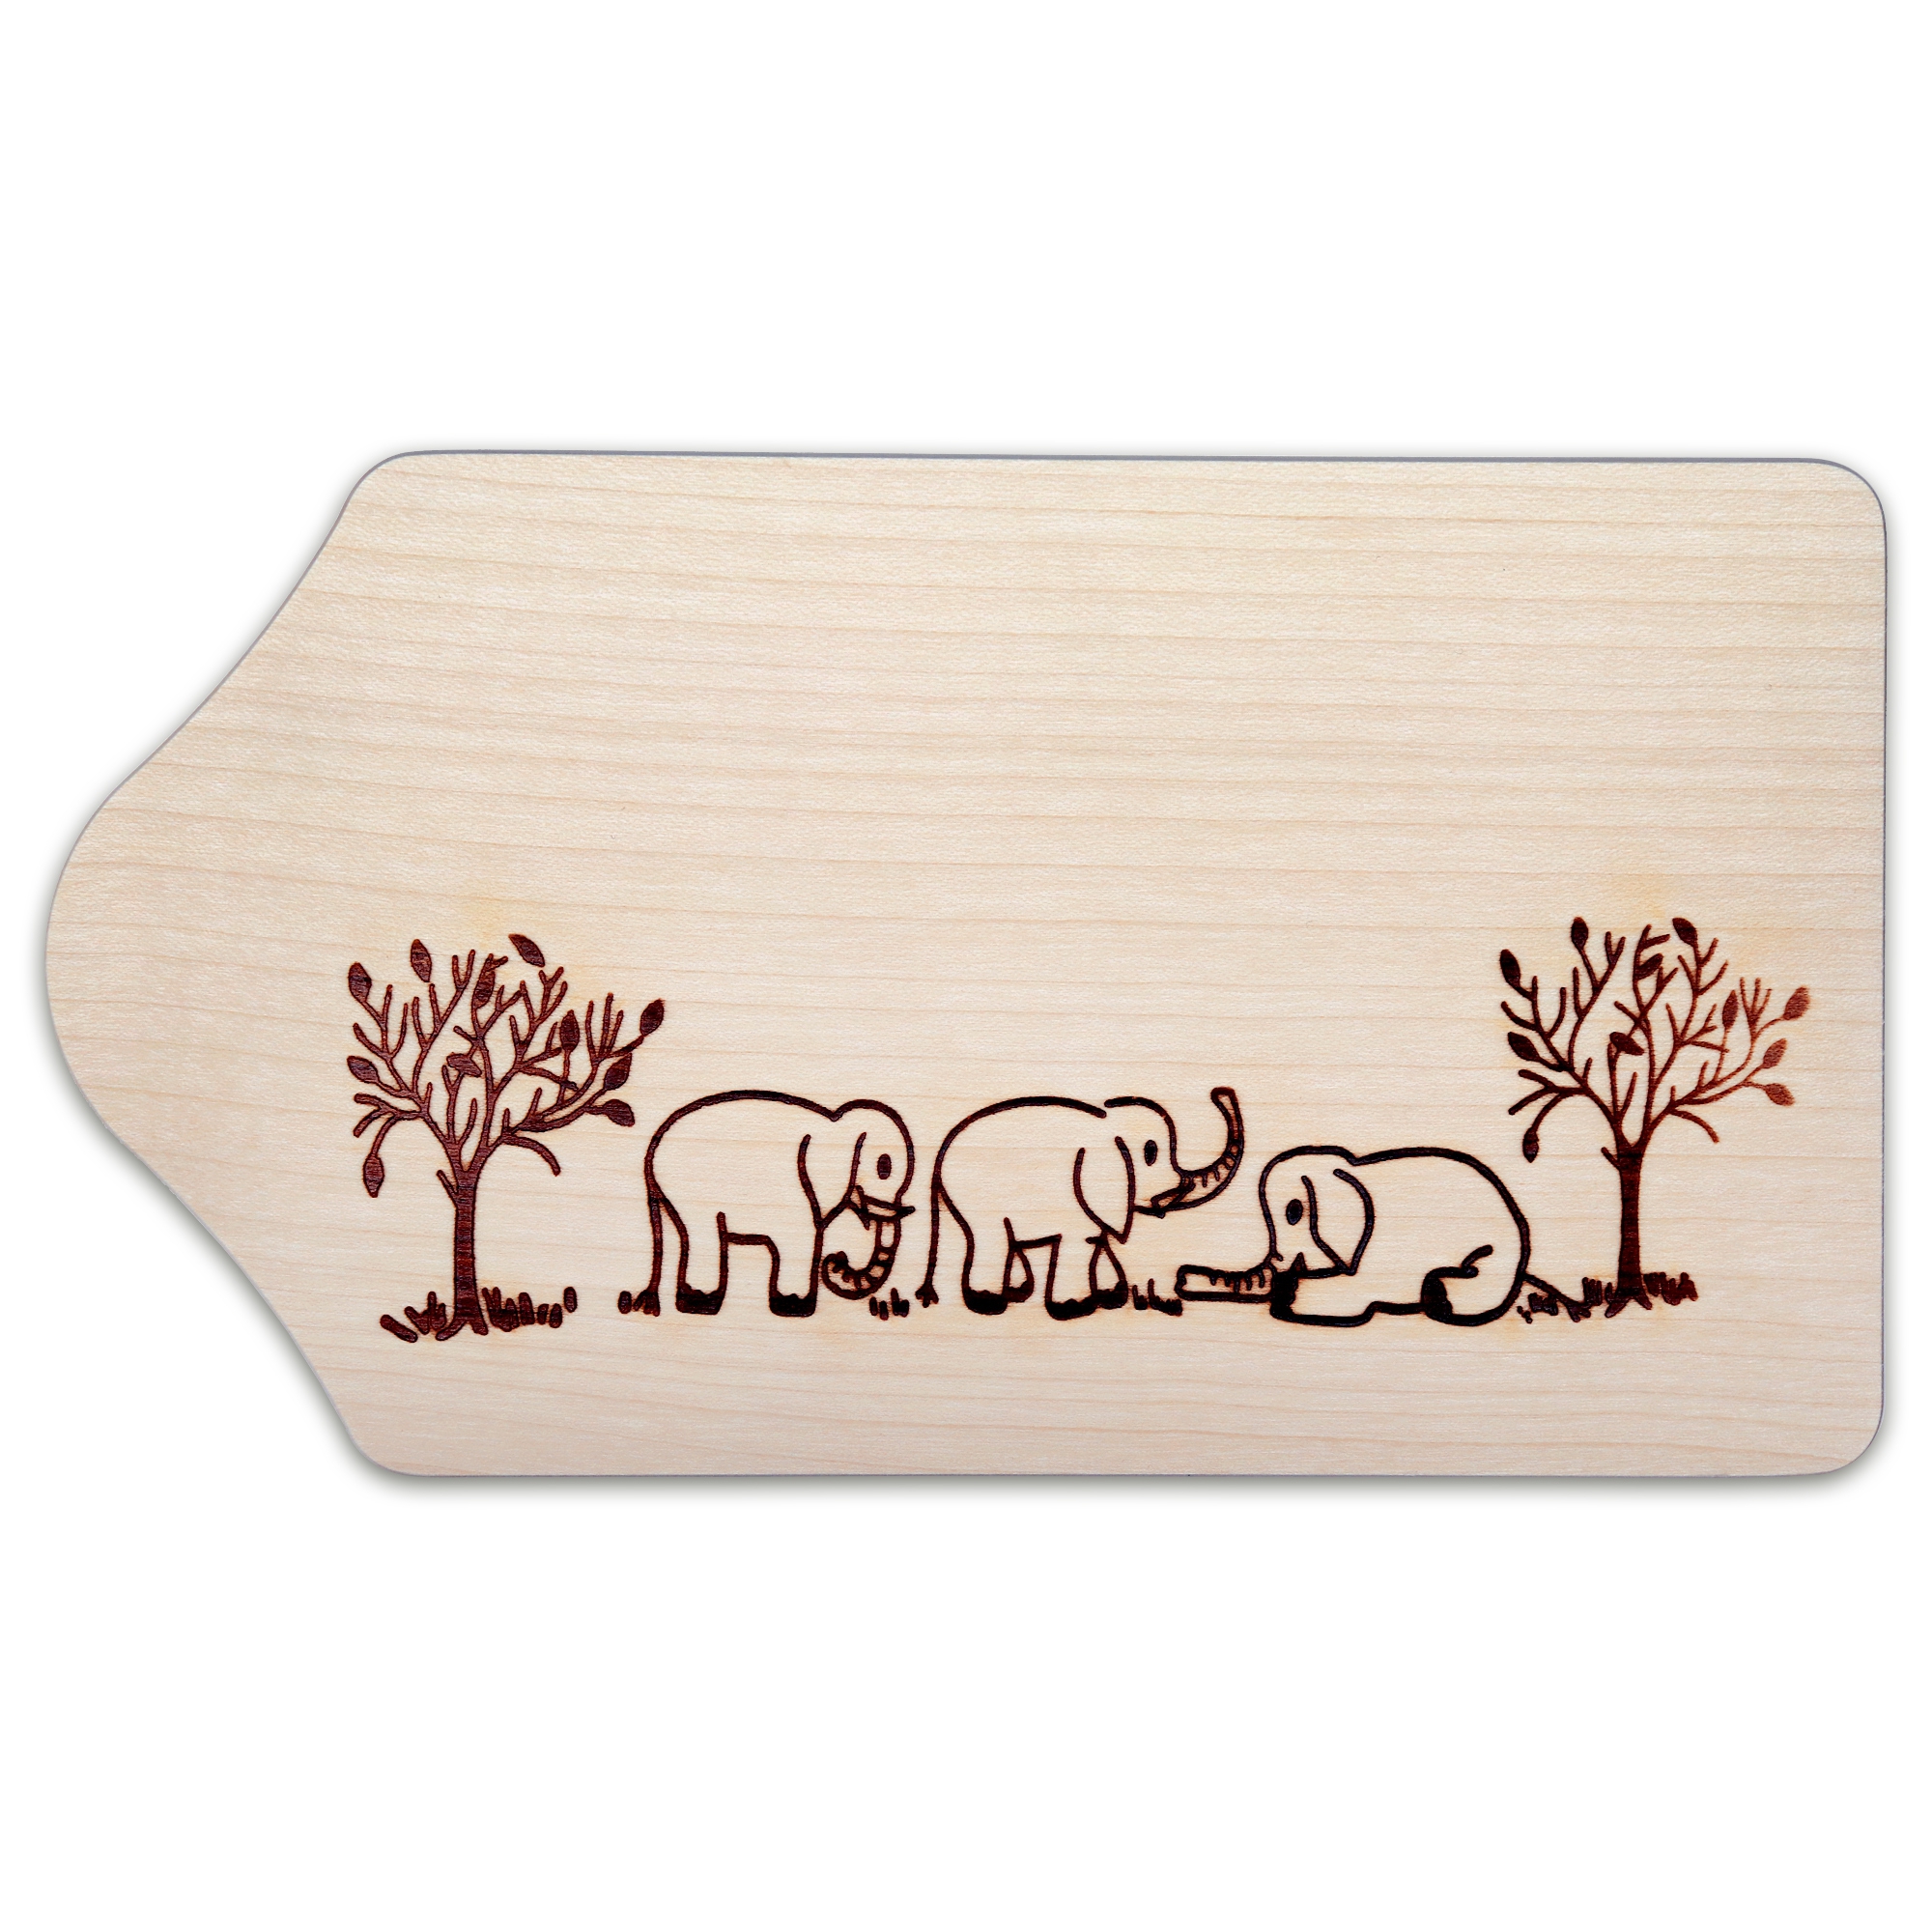 Culinaris - Breakfast board - maple wood - elephant